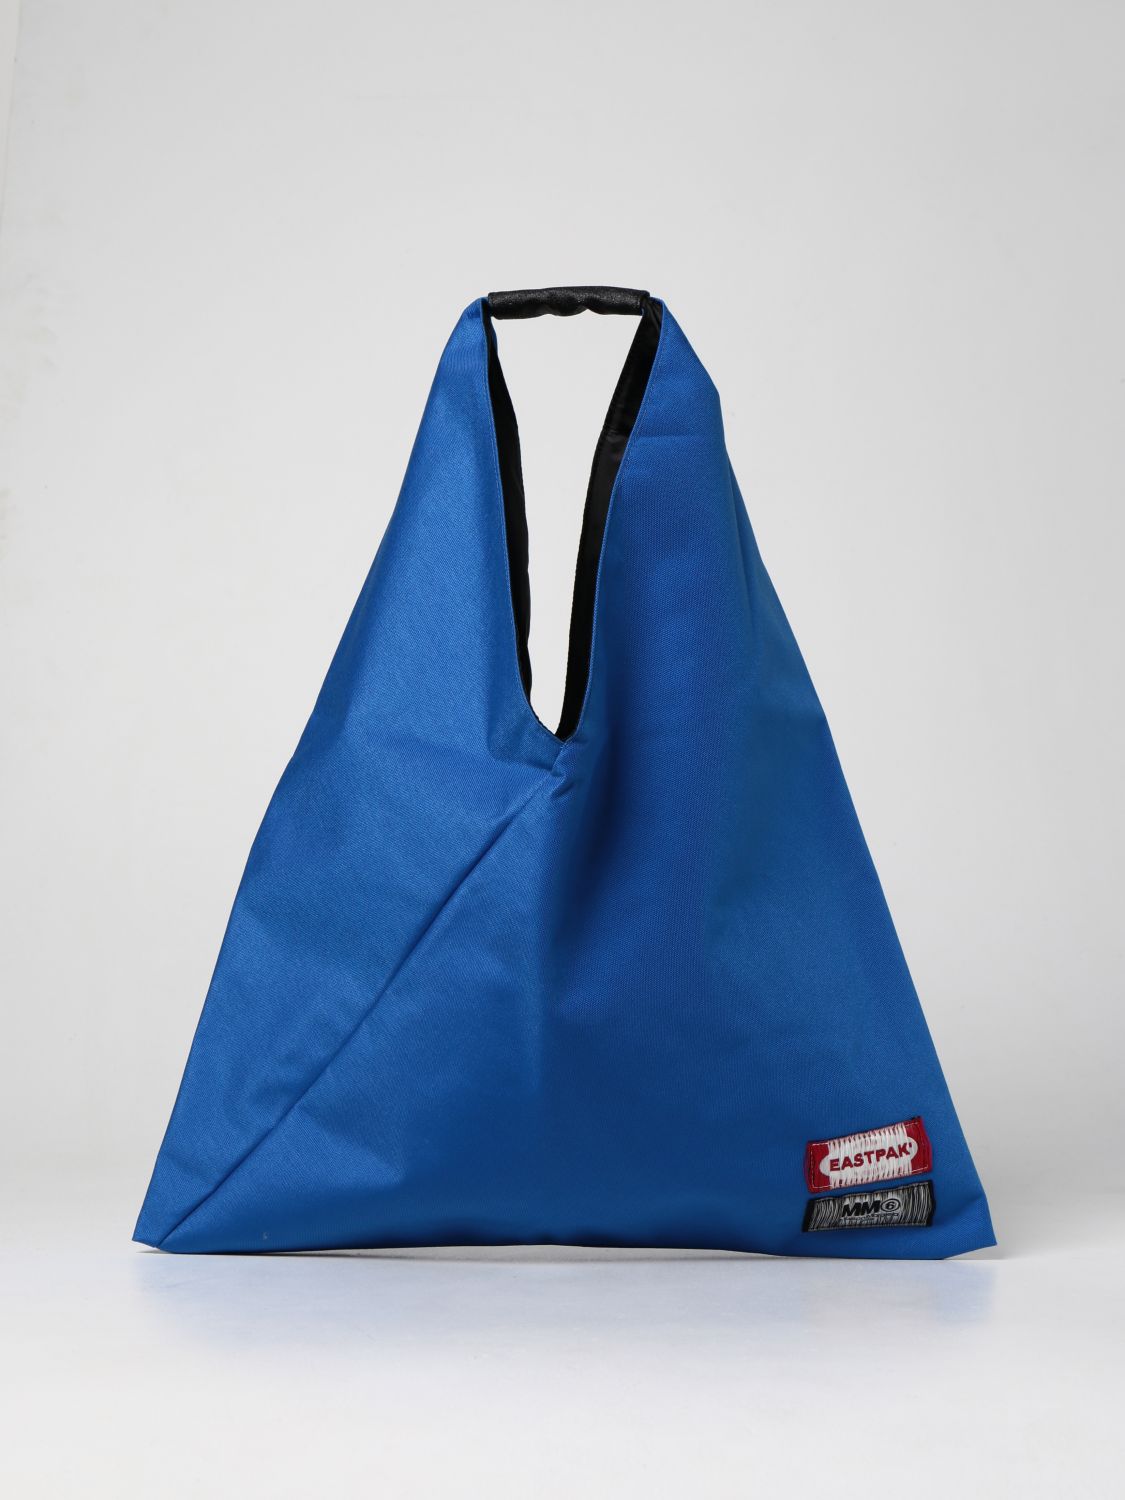 Bags Eastpak: Japanese Mm6 Maison Margiela x Eastpak nylon bag blue 1